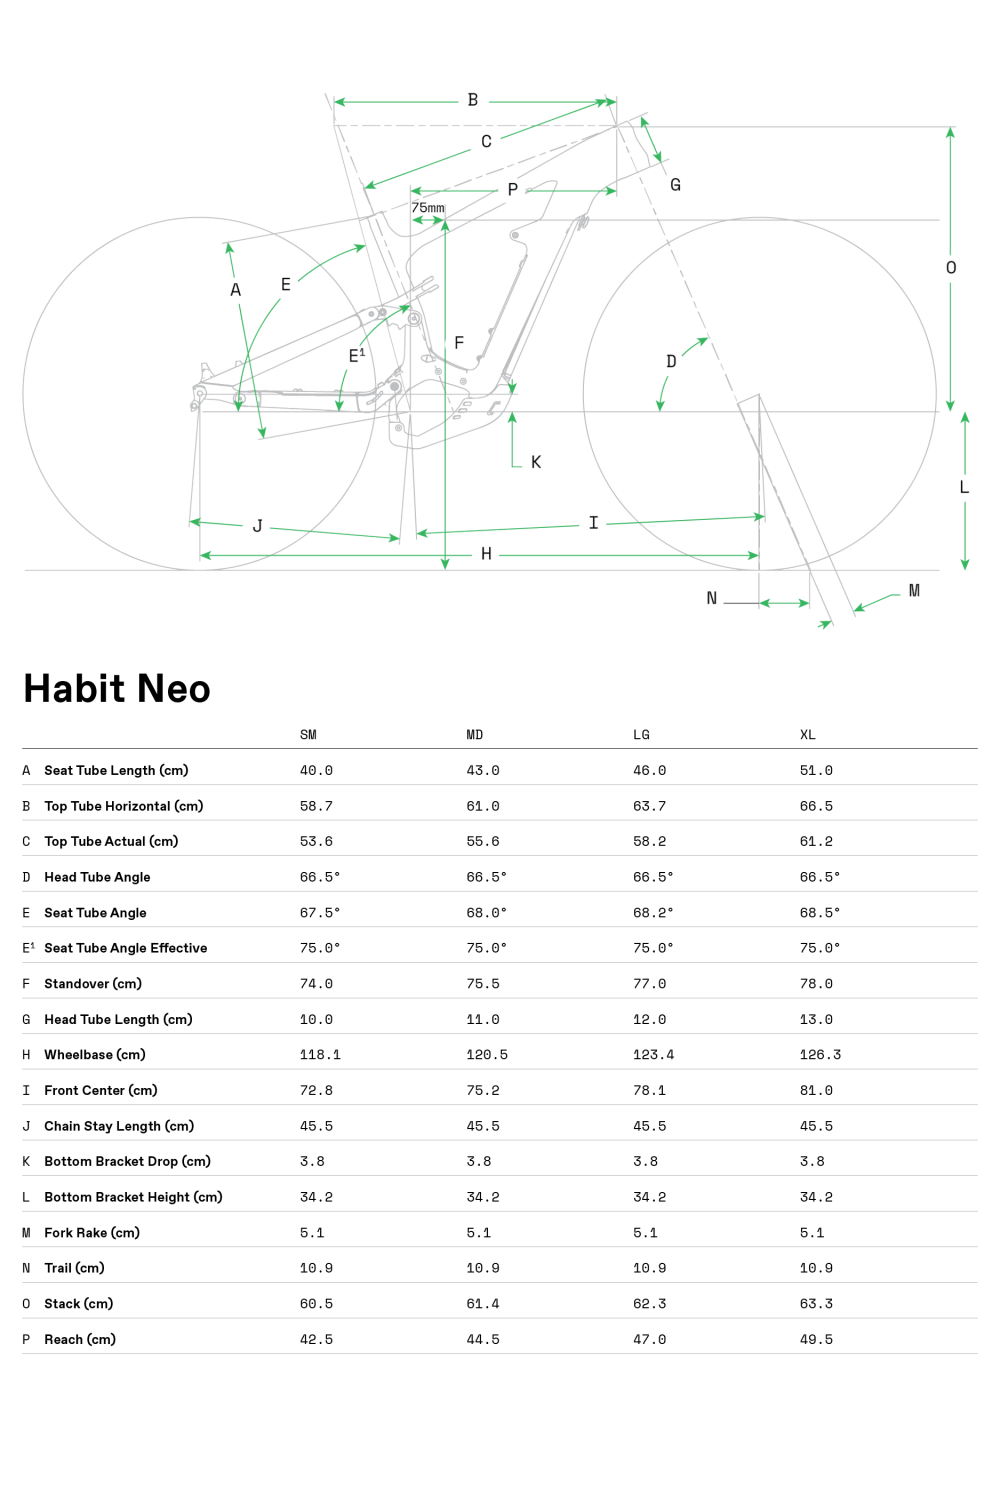 Habit Neo 2 - 